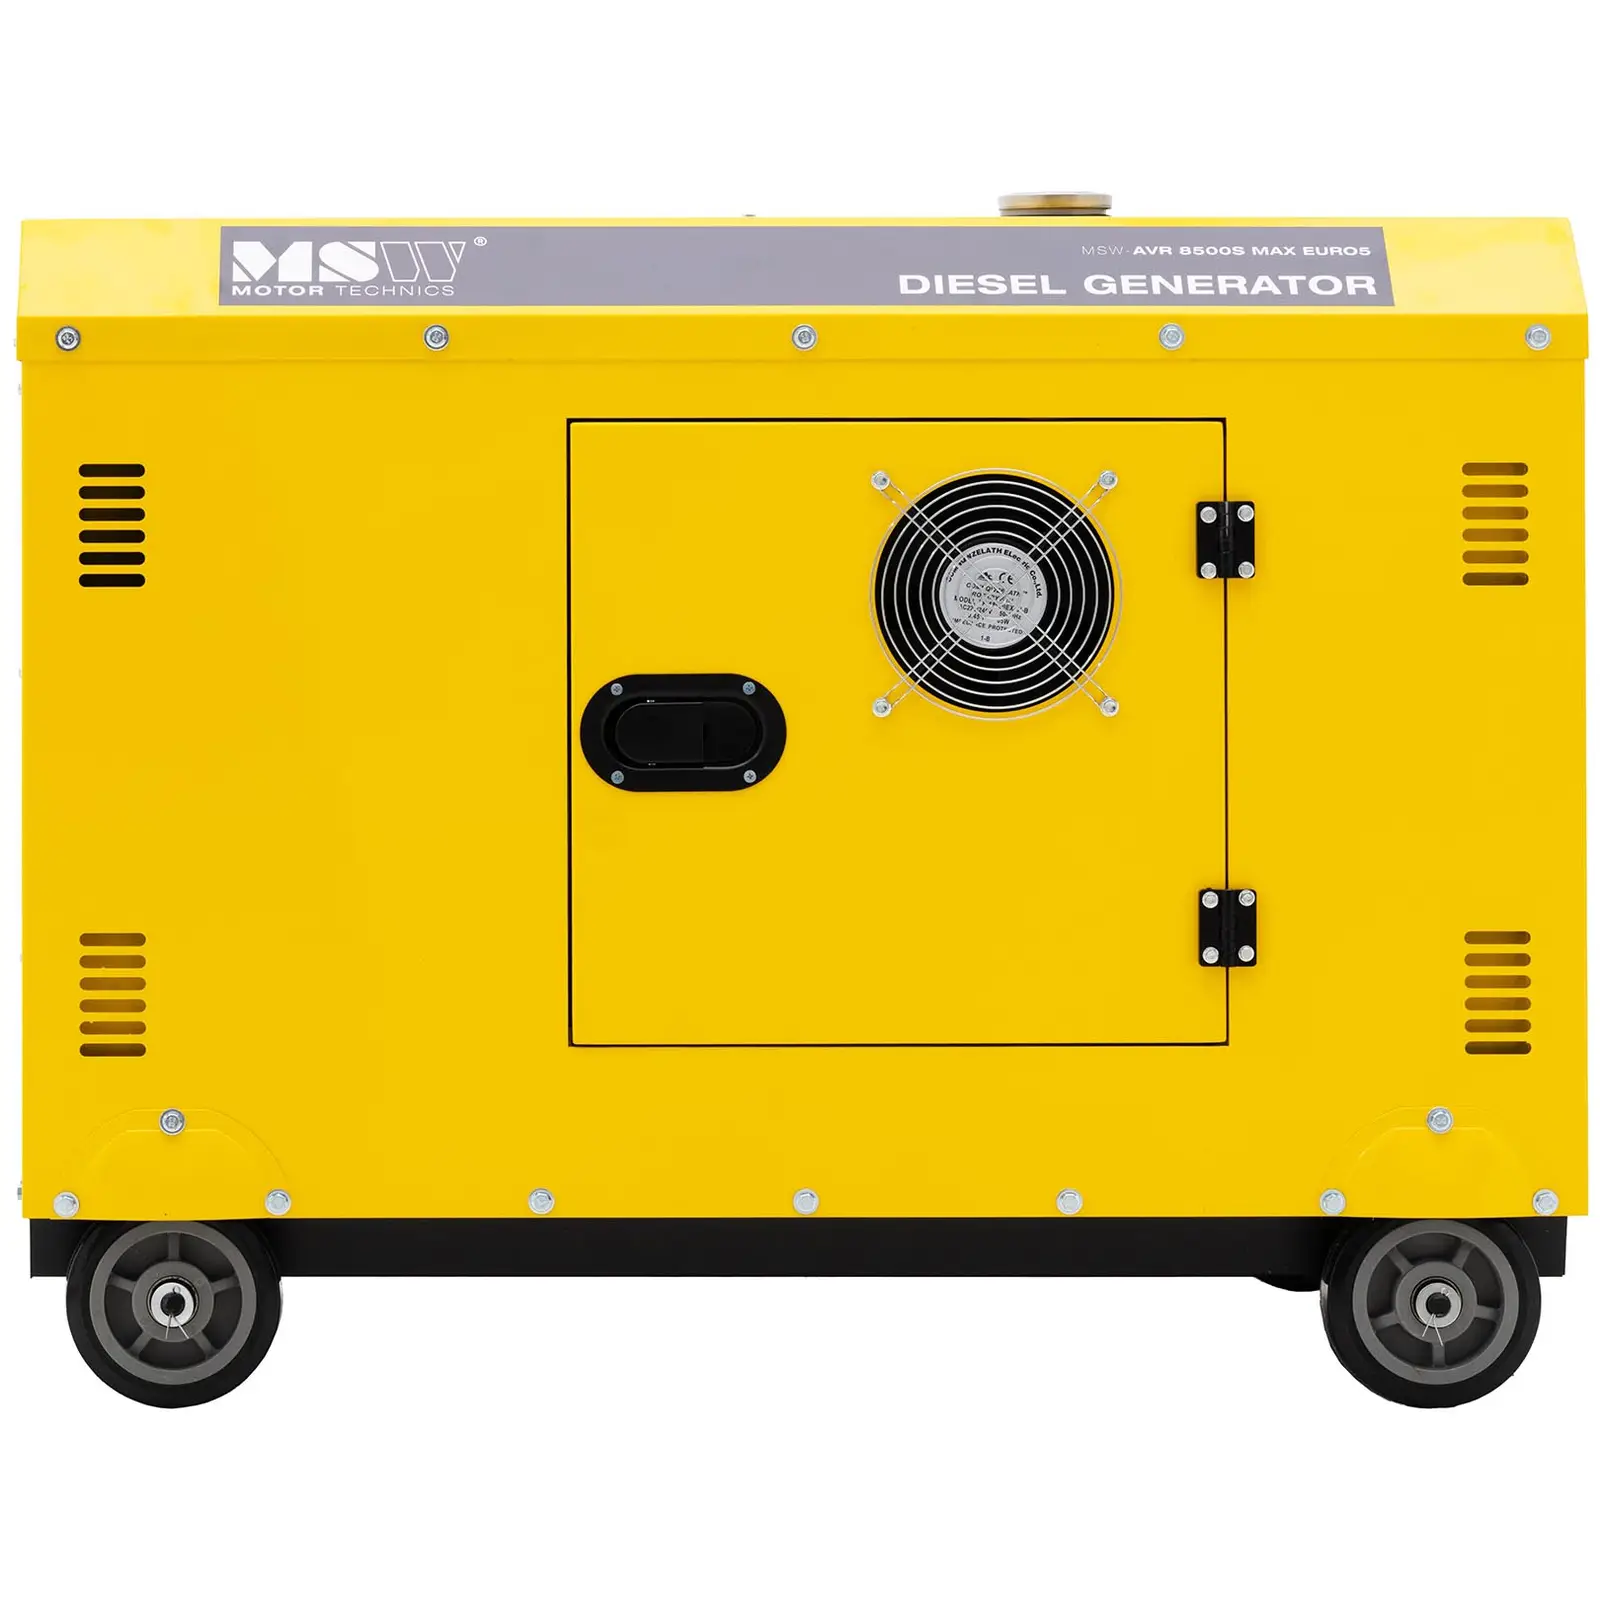 Дизелов генератор - 7220 / 8500 W - 30 л - 240/400 V - преносим - AVR - Euro 5